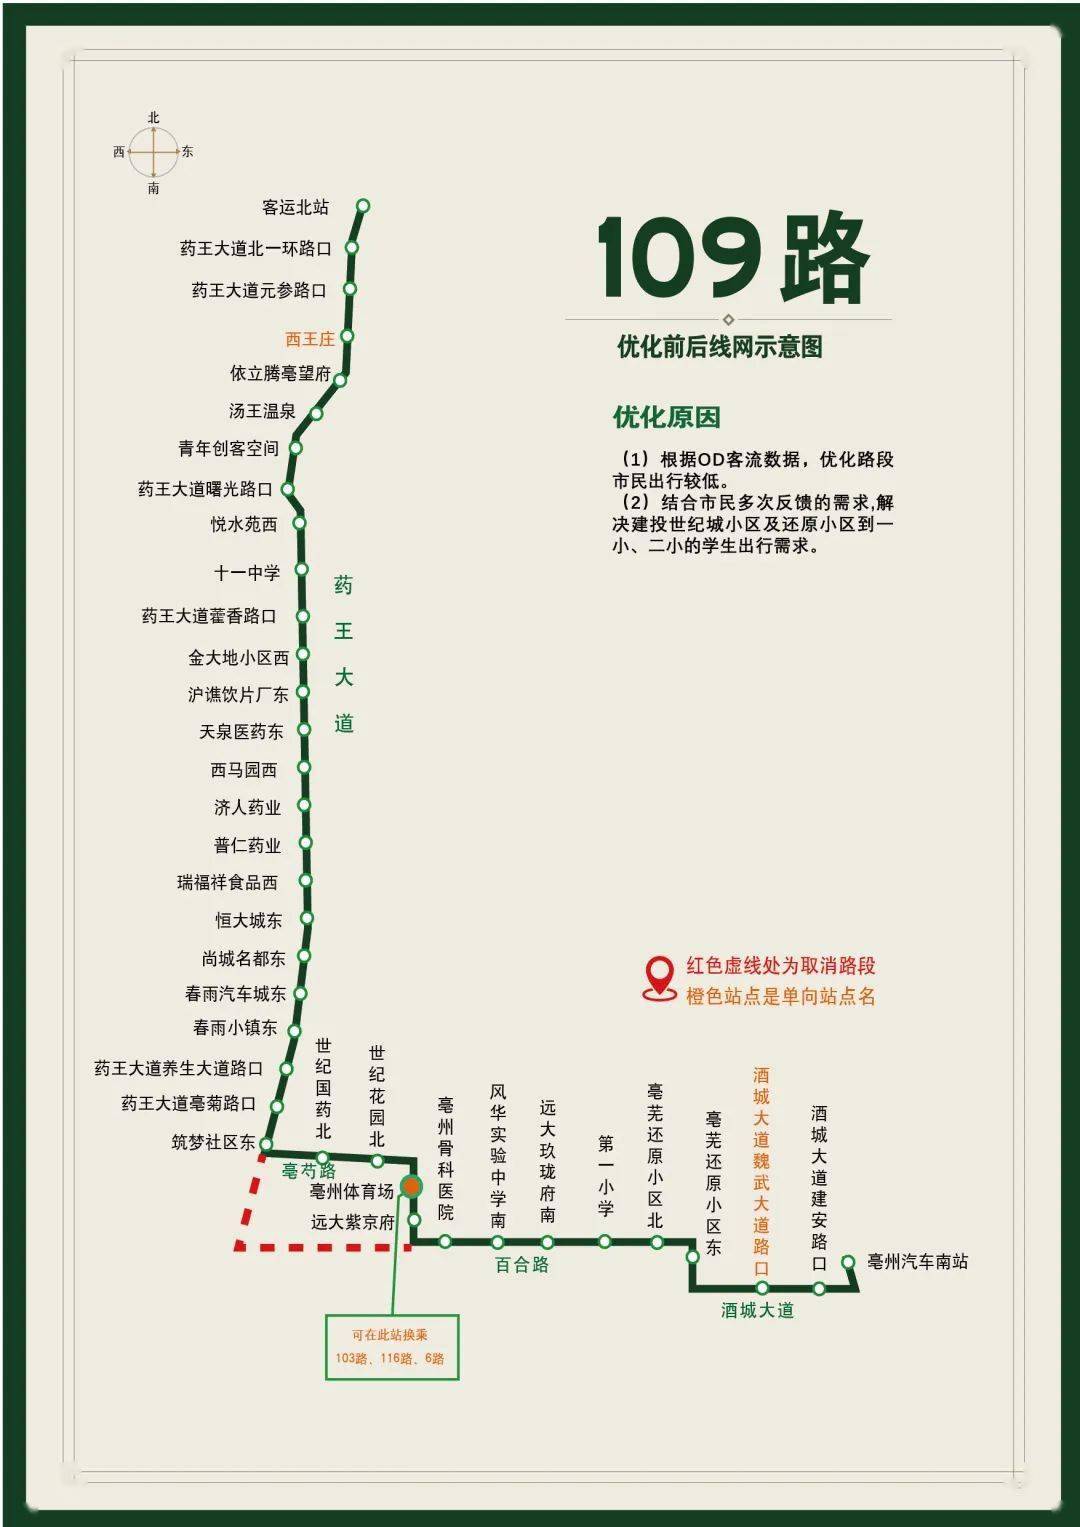 北京103路公交车路线图图片